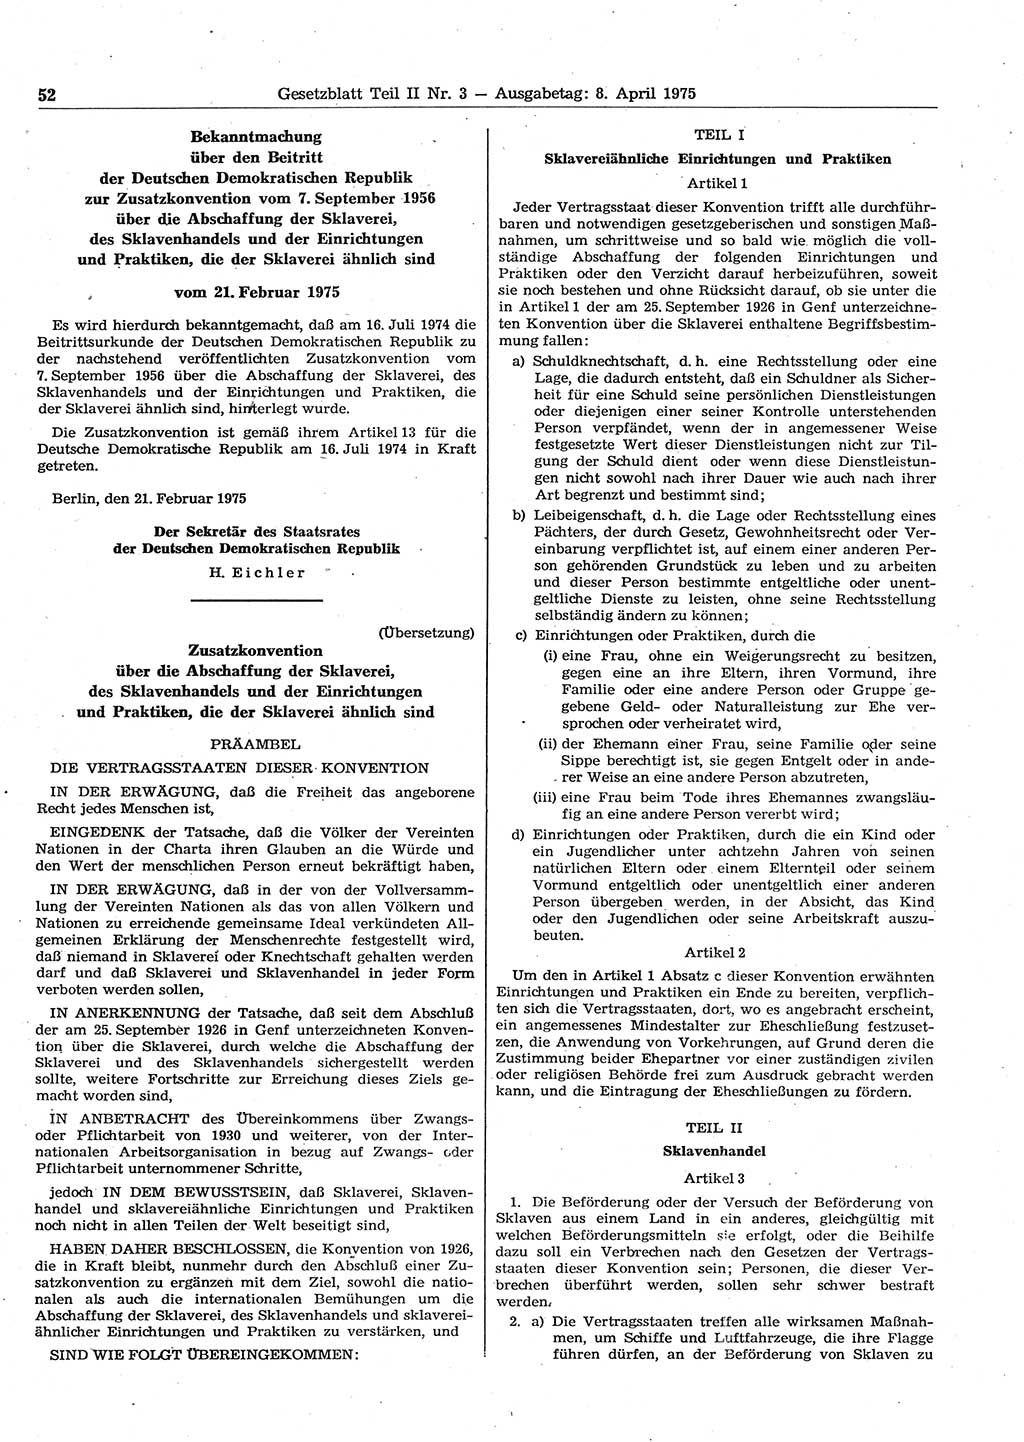 Gesetzblatt (GBl.) der Deutschen Demokratischen Republik (DDR) Teil ⅠⅠ 1975, Seite 52 (GBl. DDR ⅠⅠ 1975, S. 52)